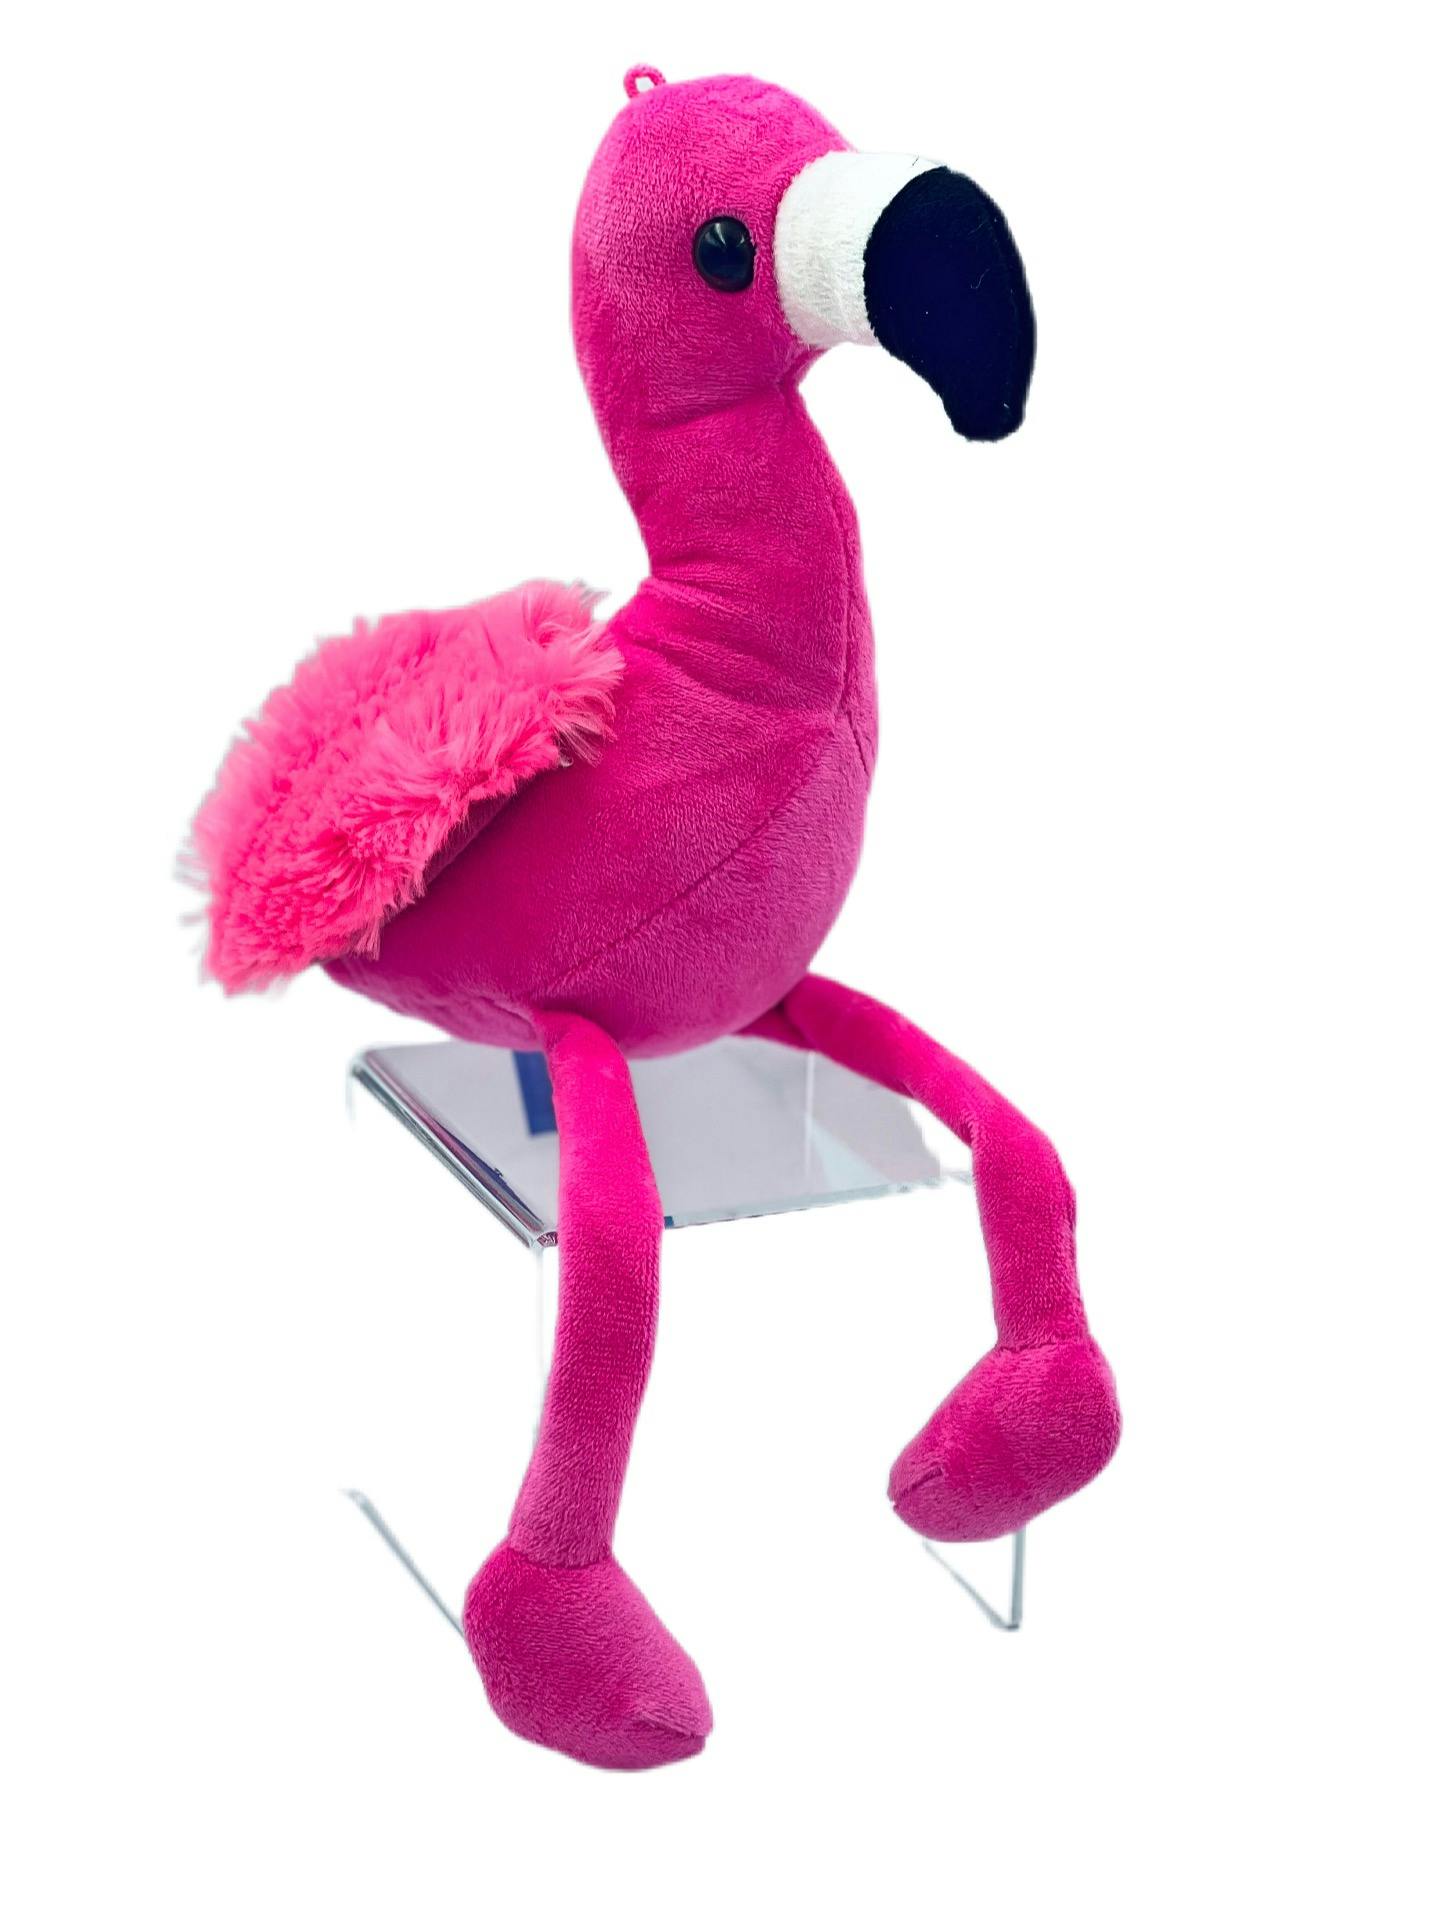 Flamingo - Product image